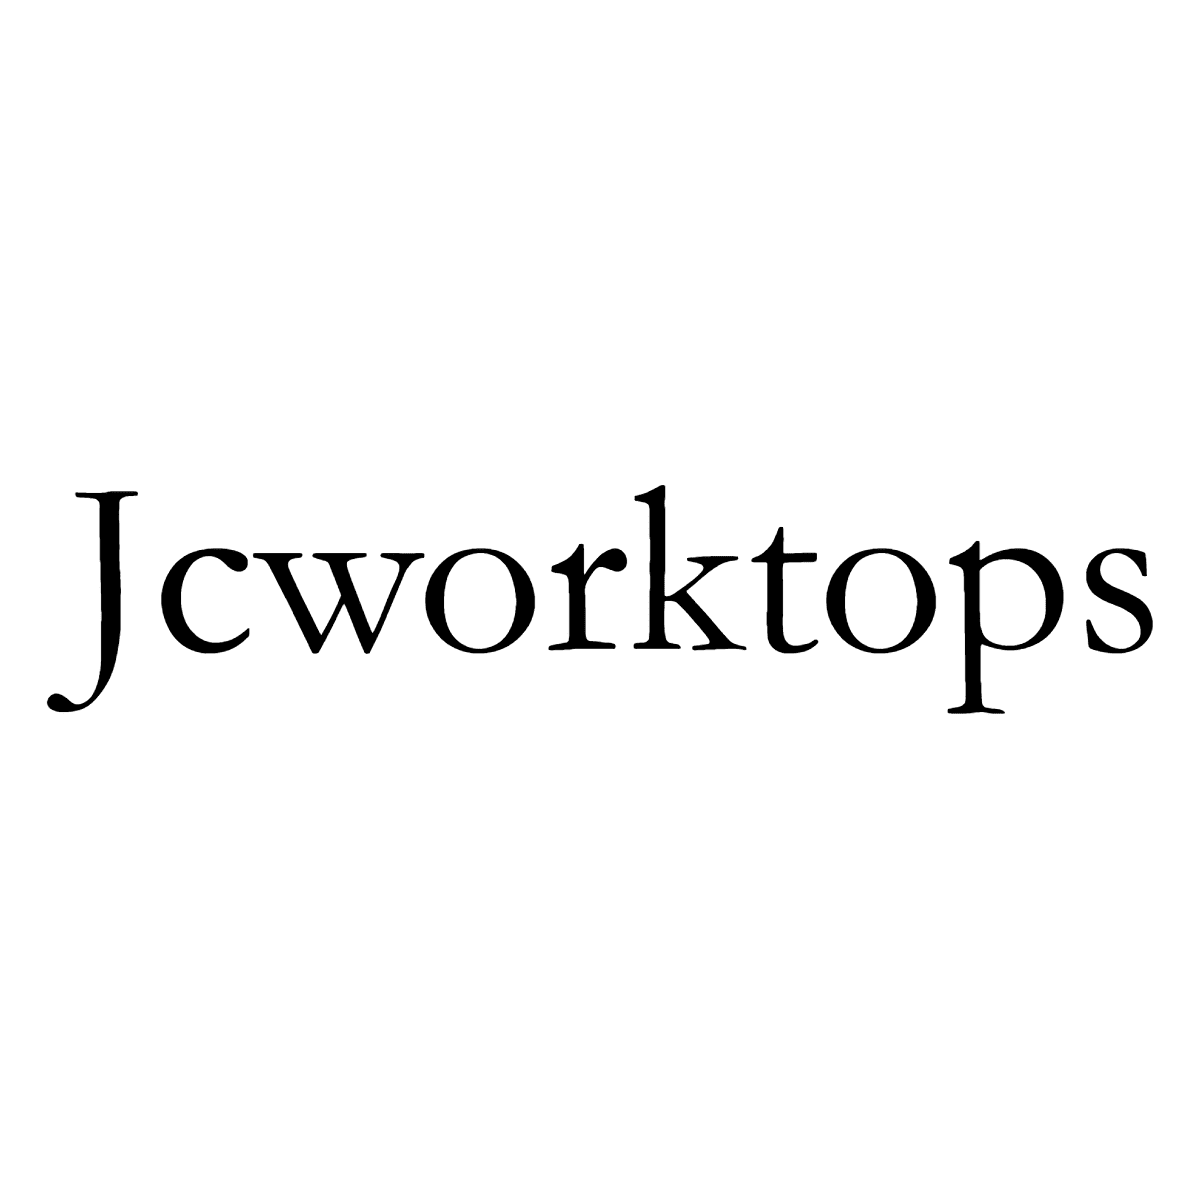 Jcworktops Logo